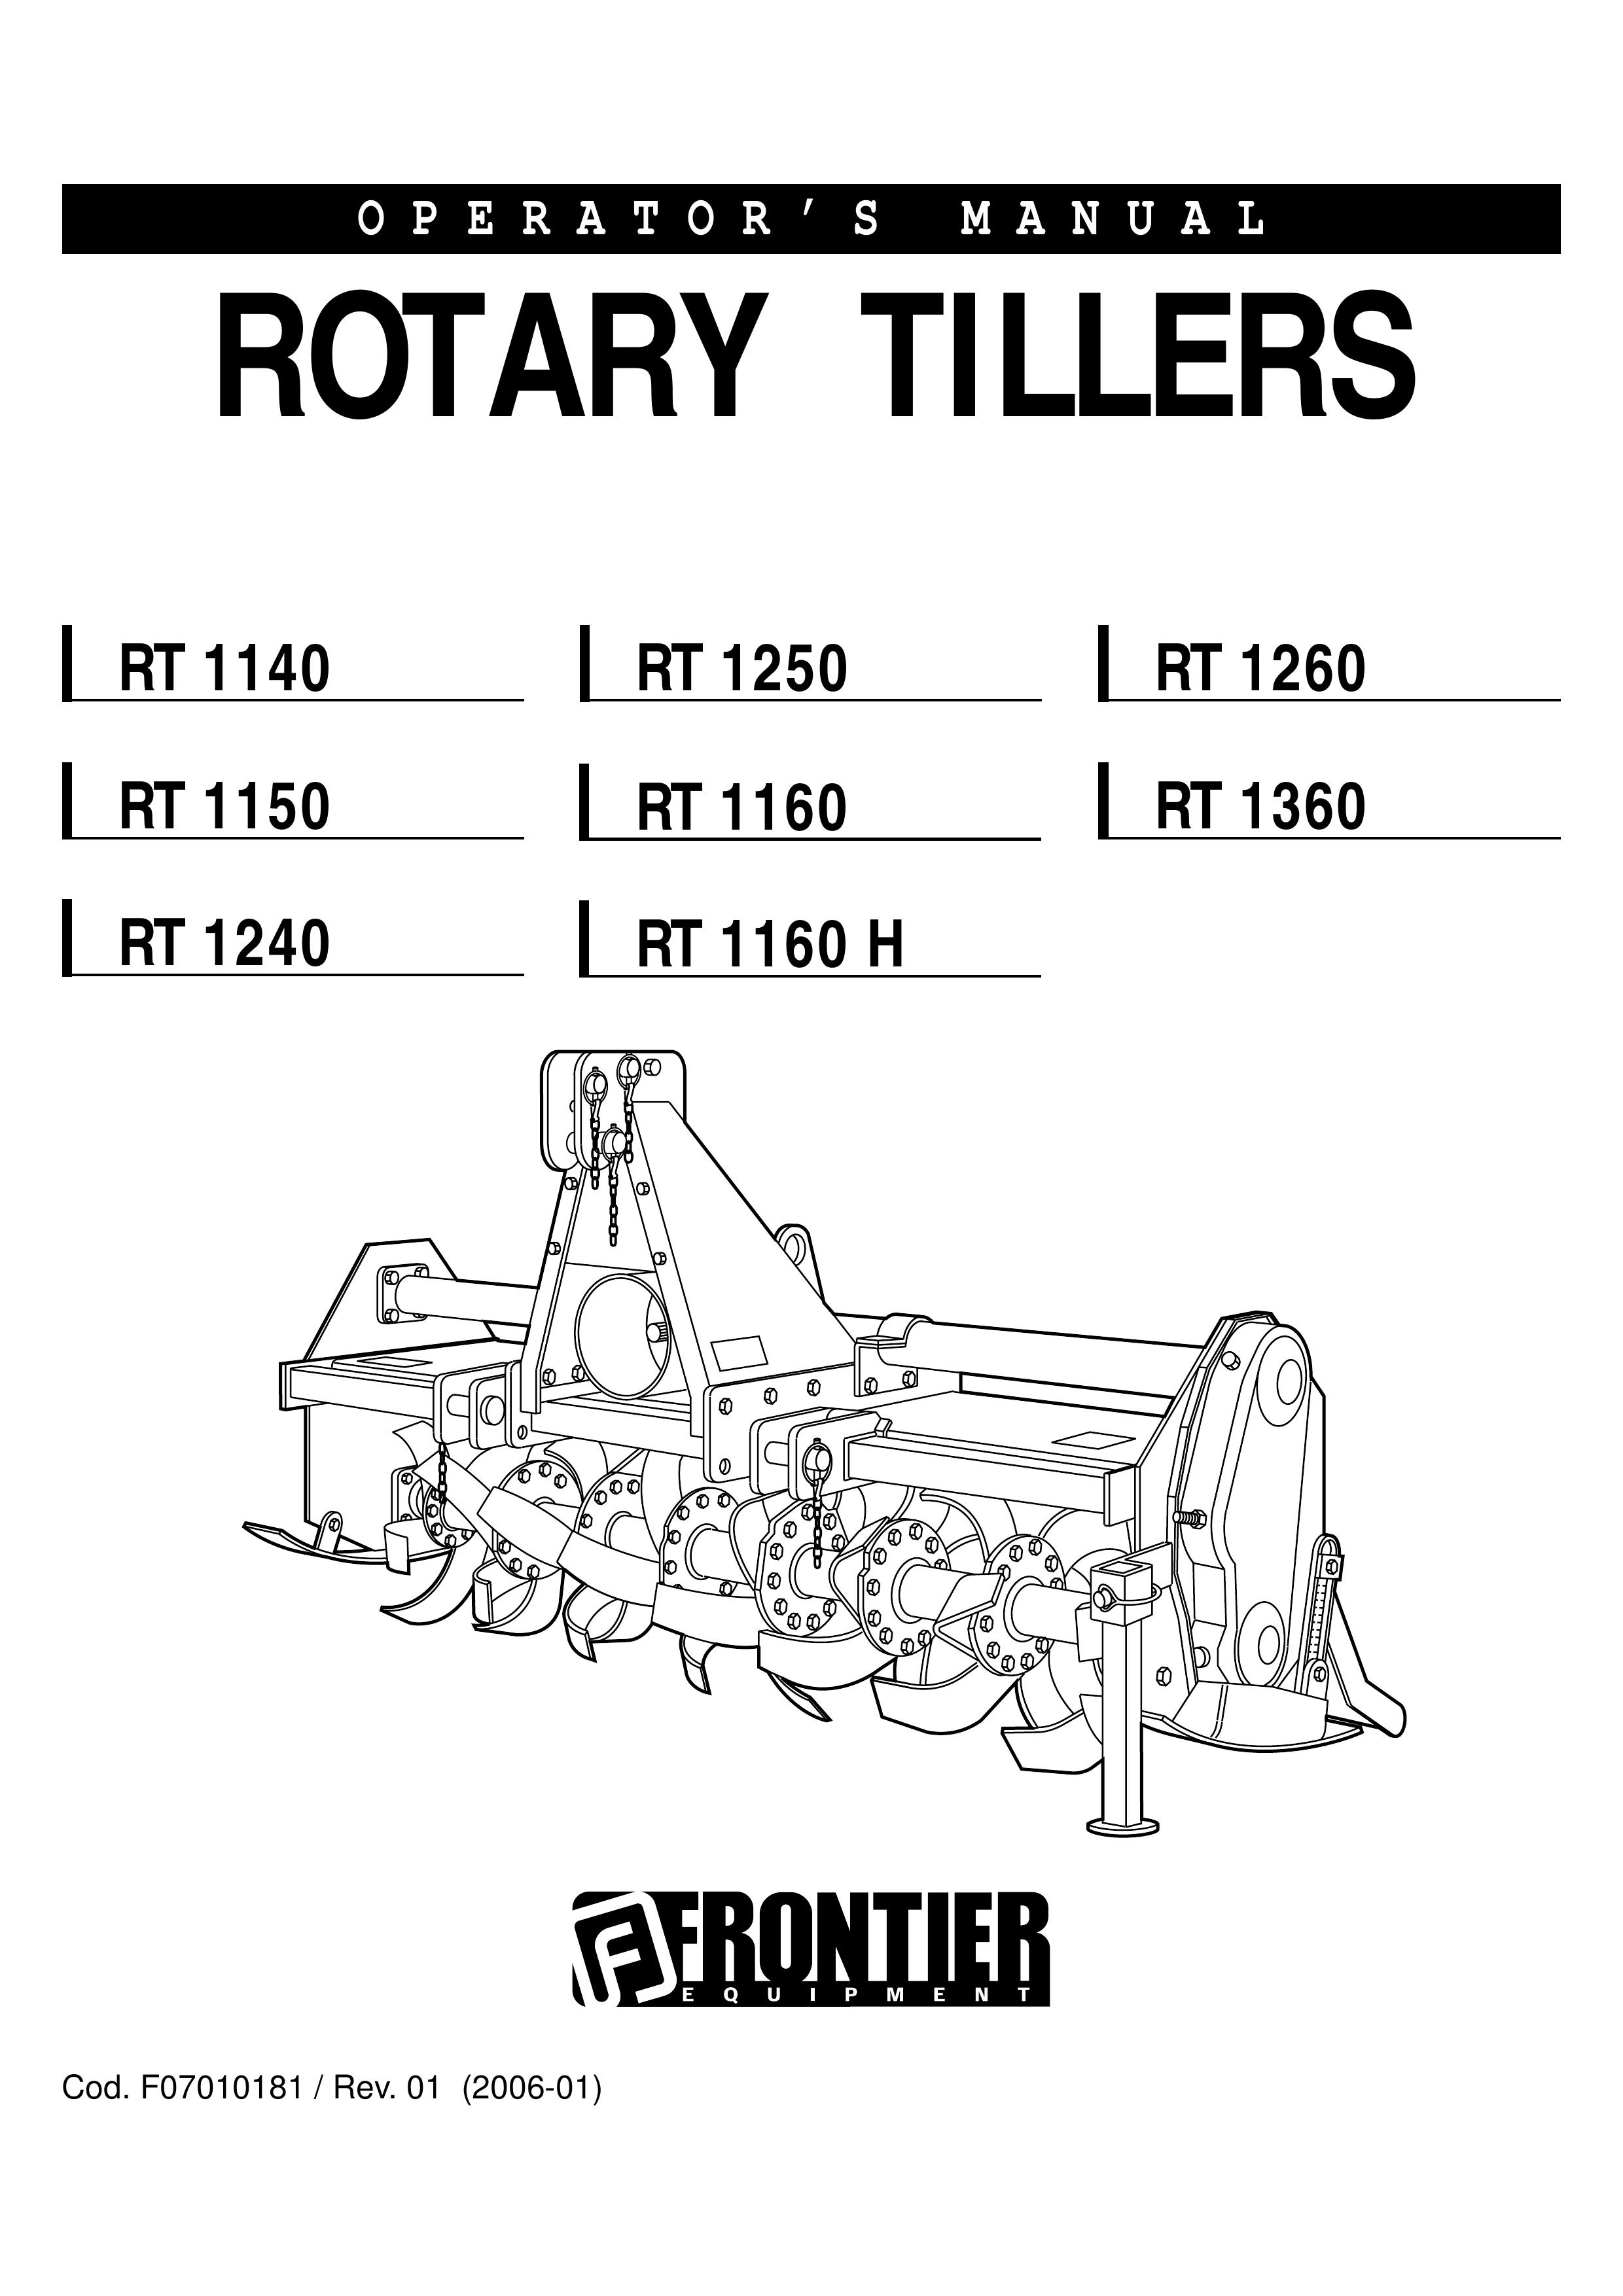 John Deere RT1140 Tiller User Manual